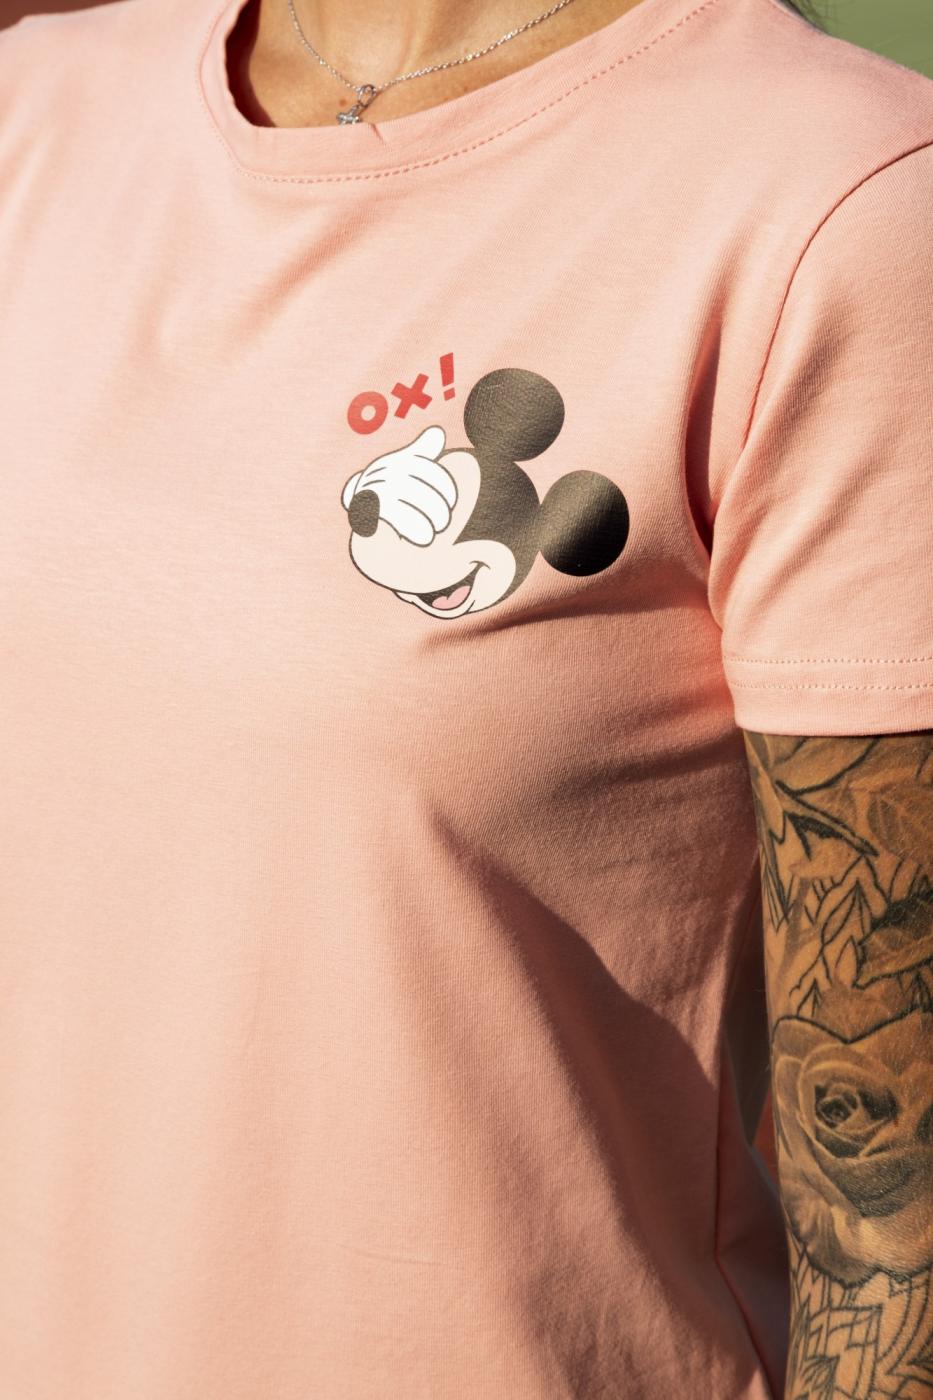 Женская Футболка  хлопковая трикотажная с принтом Mickey Mouse микки маус Ox розовая Intruder - Фото 5